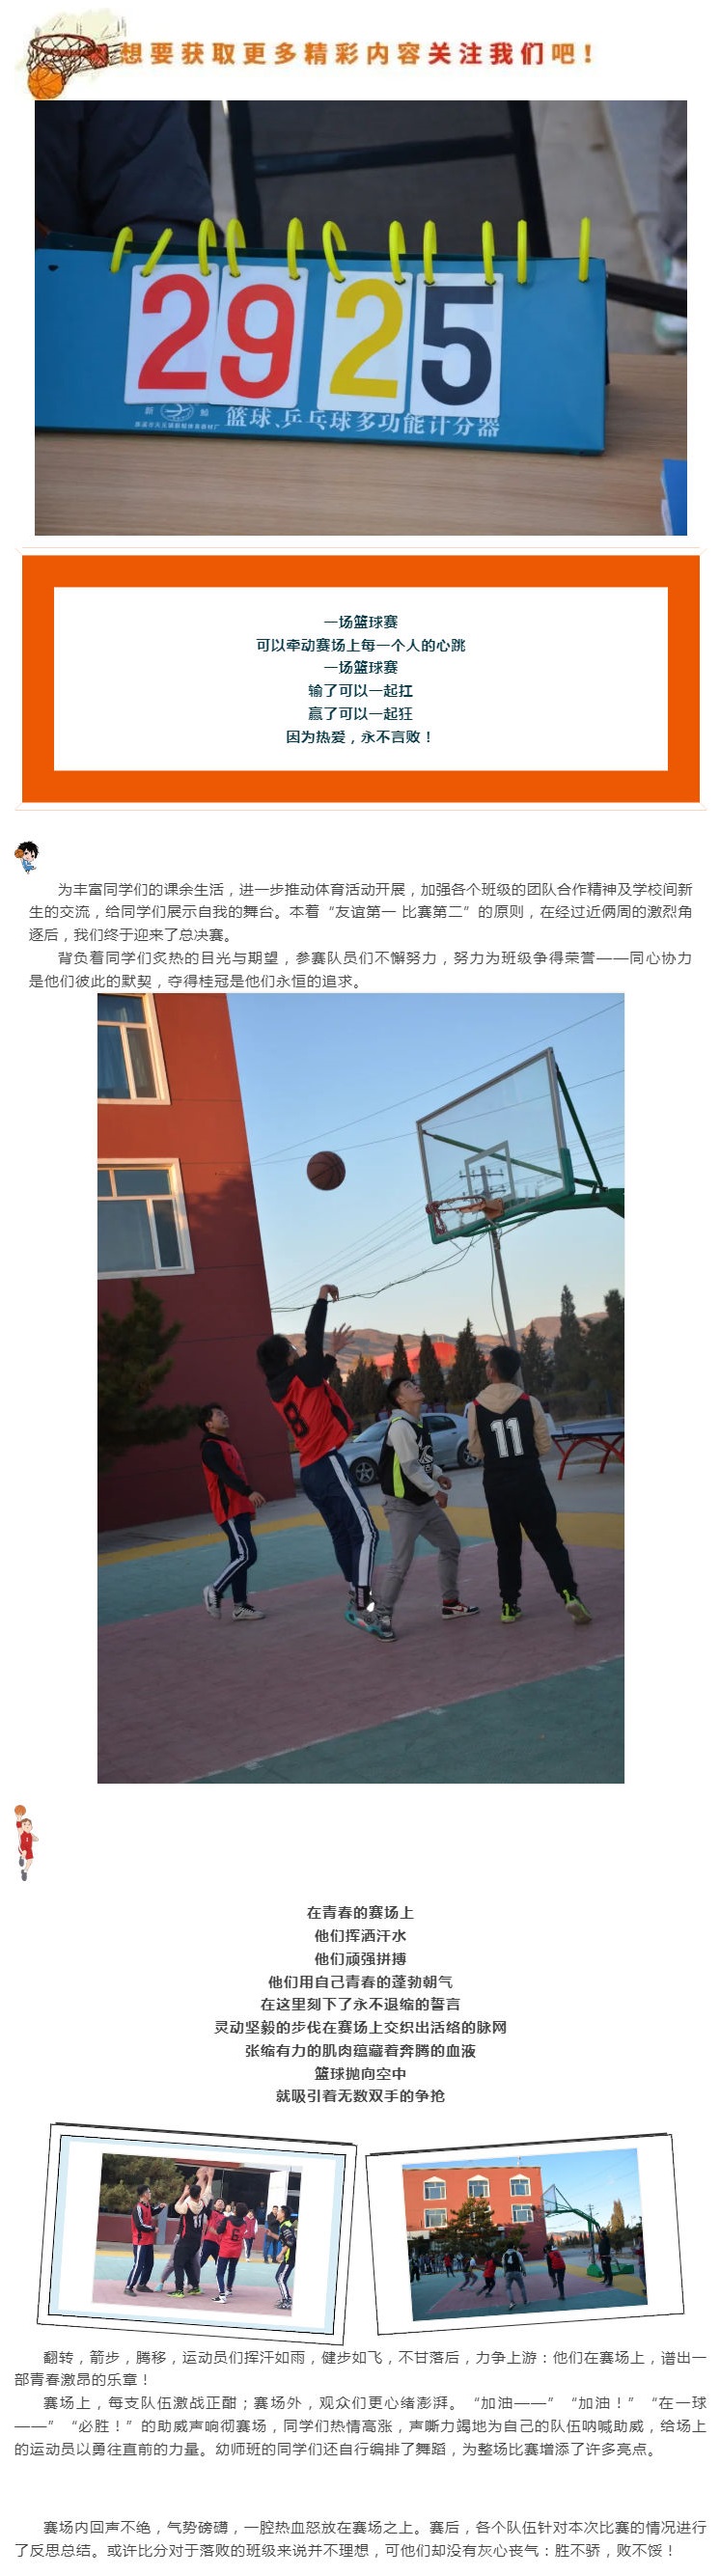 篮球争霸赛——无兄弟·不篮球_壹伴长图1.jpg